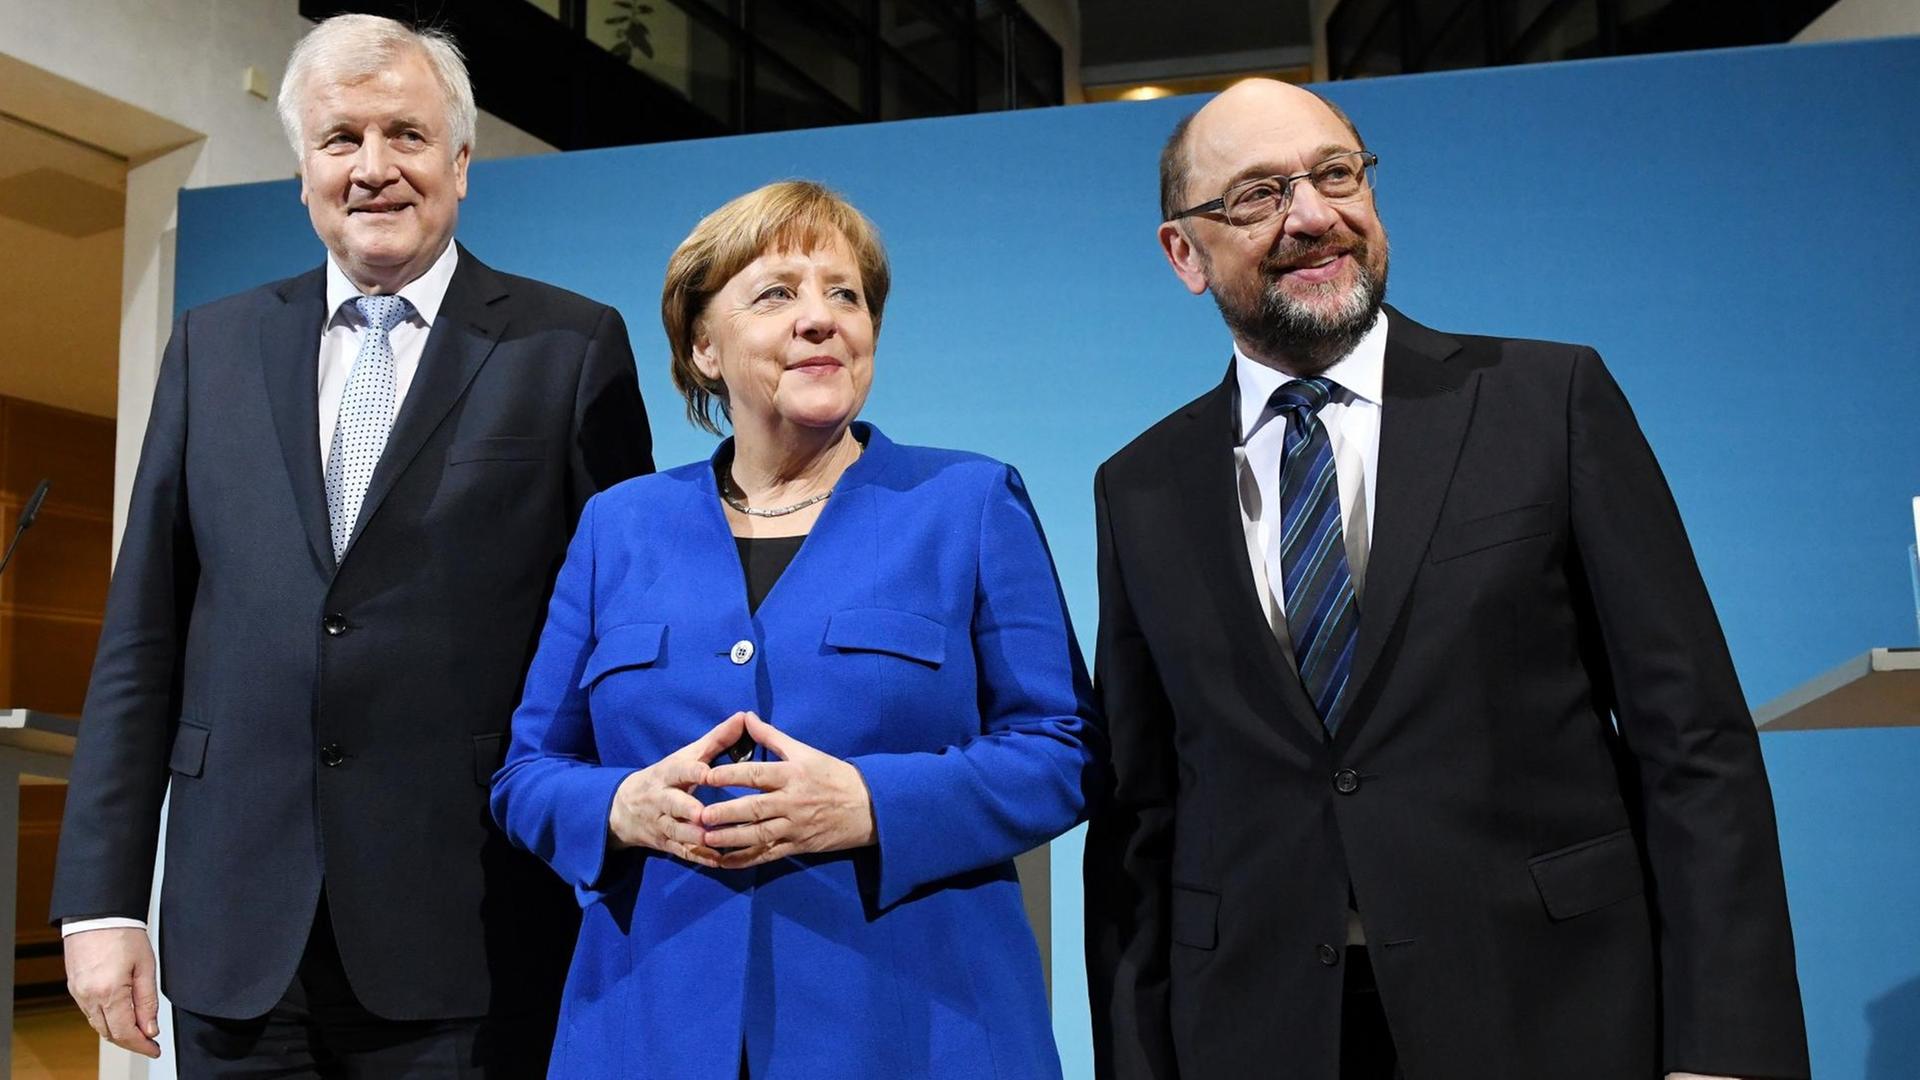 Der CSU-Vorsitzenden Horst Seehofer (l), der SPD-Parteivorsitzende Martin Schulz (r) und Bundeskanzlerin Angela Merkel (CDU) stellen sich am 12.01.2018 im Willy-Brandt-Haus in Berlin nach einer Pressekonferenz zu einem Foto auf. Die Spitzen von CDU, CSU und SPD streben eine Neuauflage der großen Koalition an.